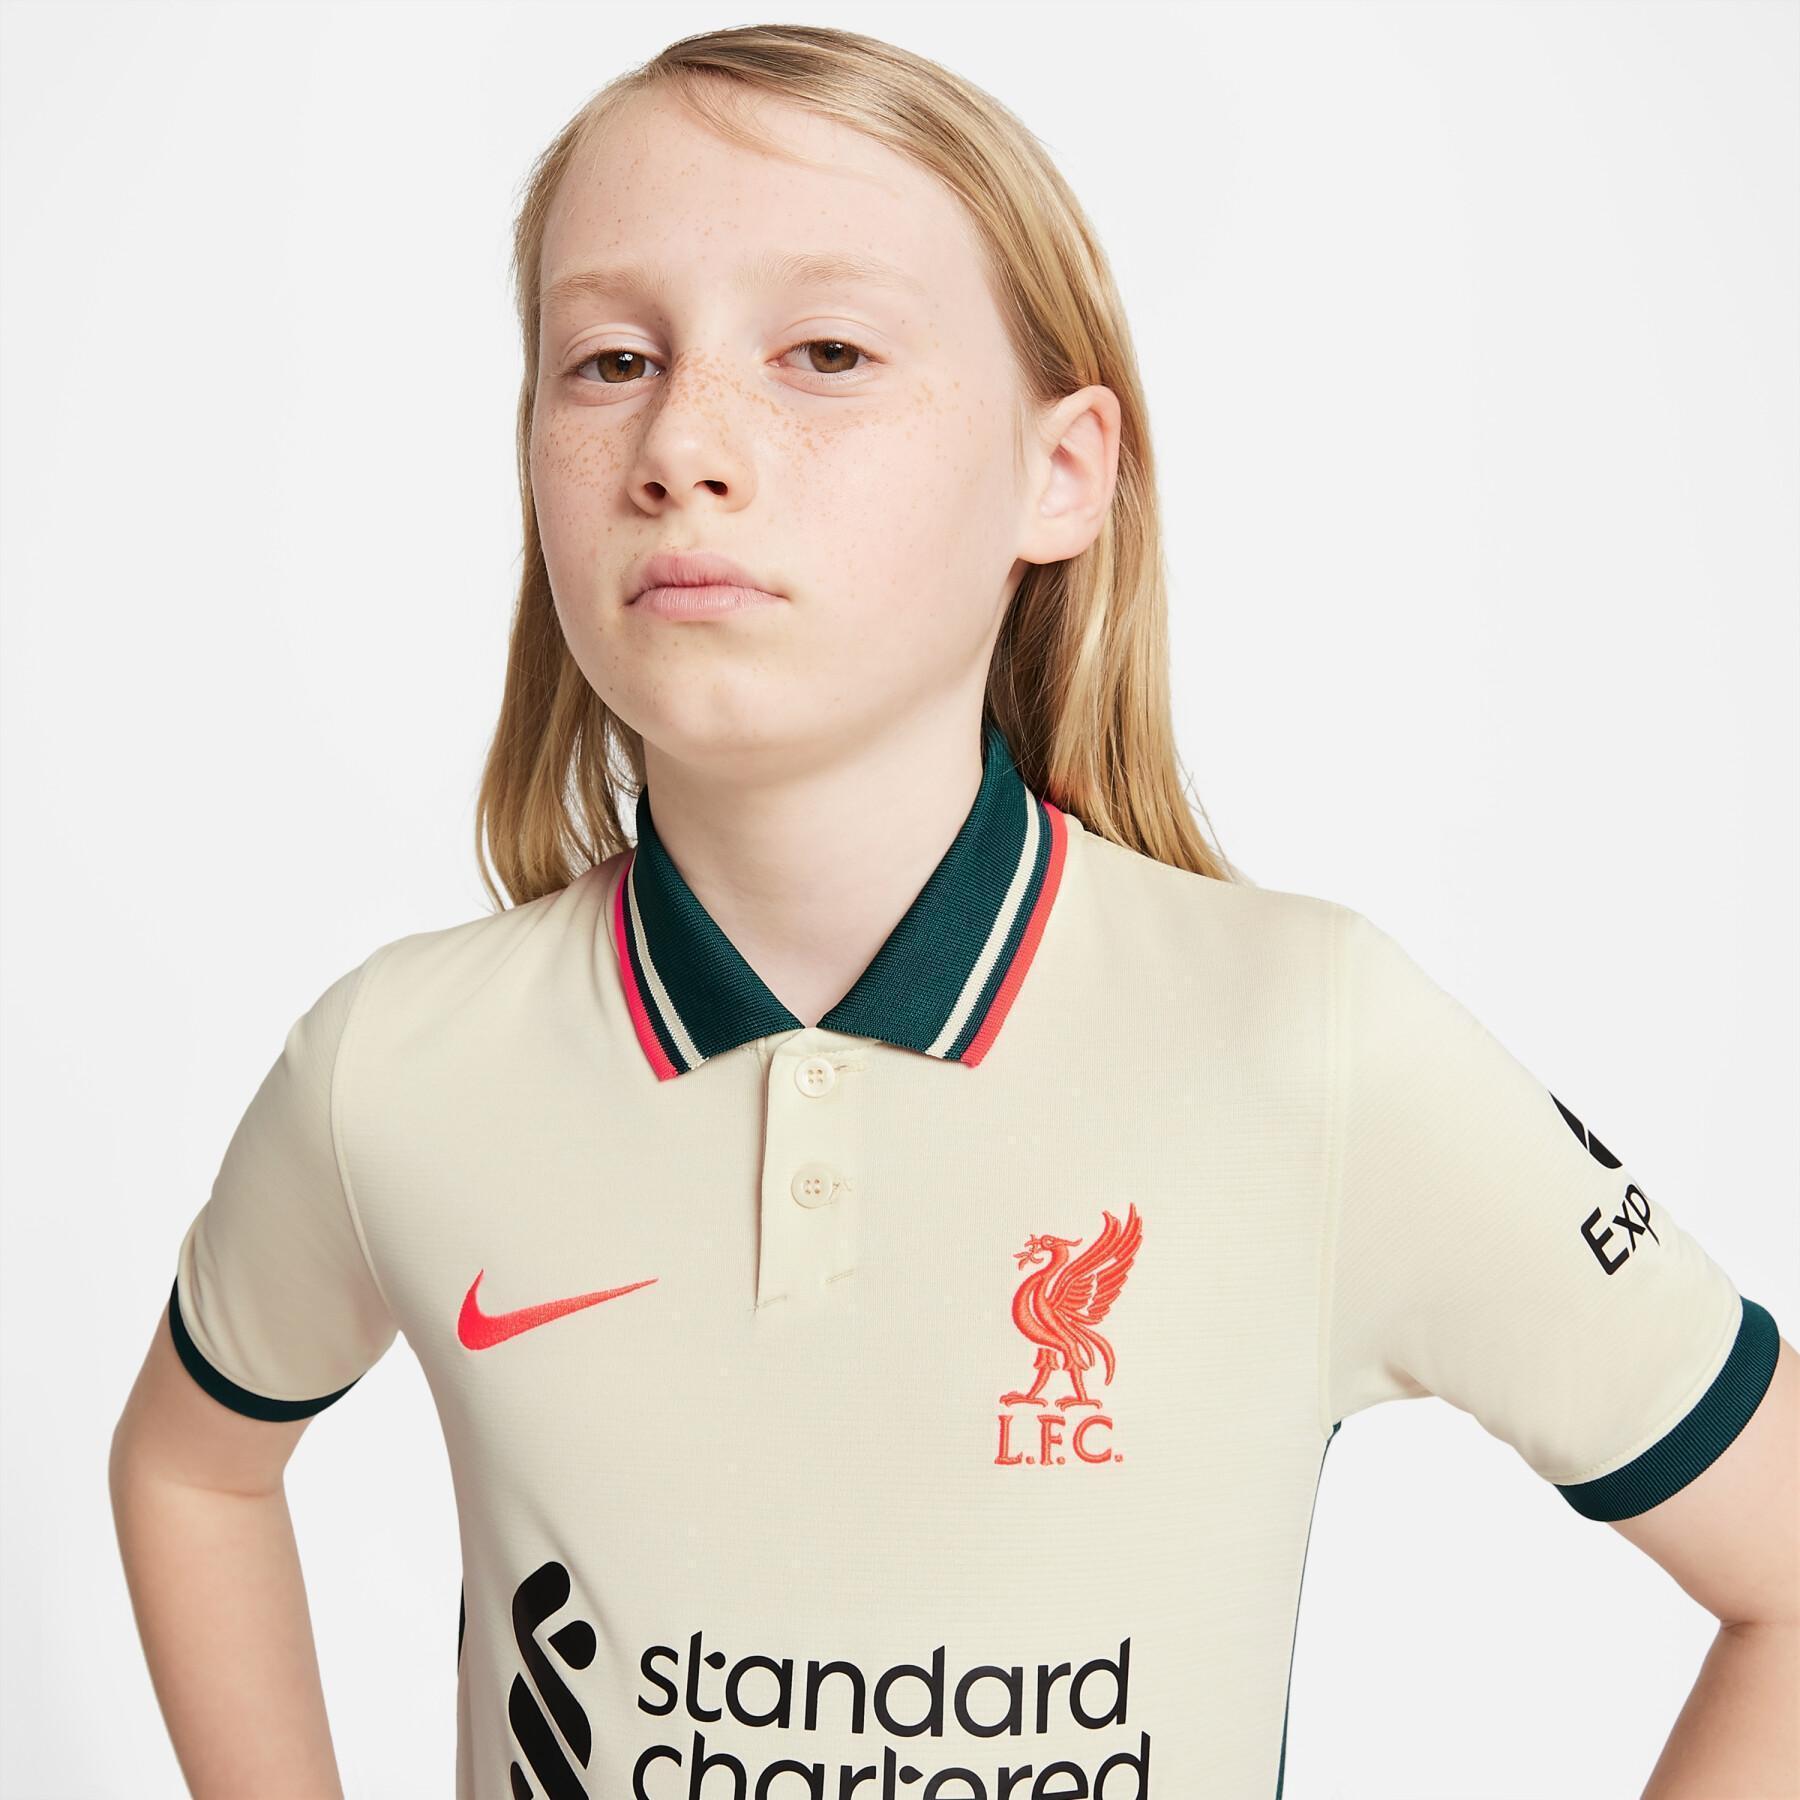 Children's outdoor jersey Liverpool FC 2021/22